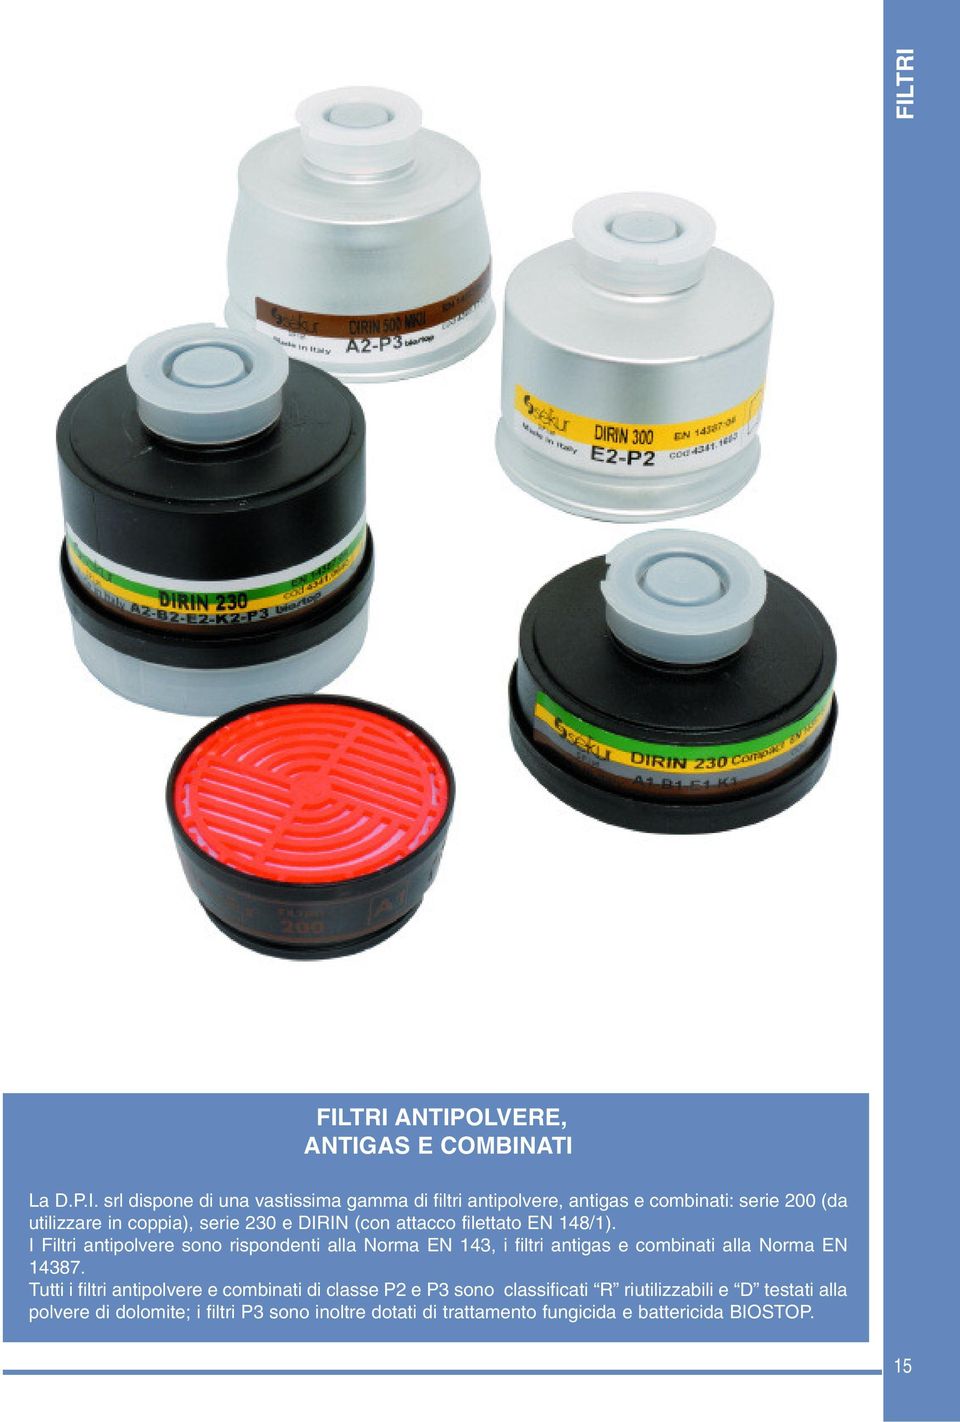 I Filtri antipolvere sono rispondenti alla Norma EN 143, i filtri antigas e combinati alla Norma EN 14387.